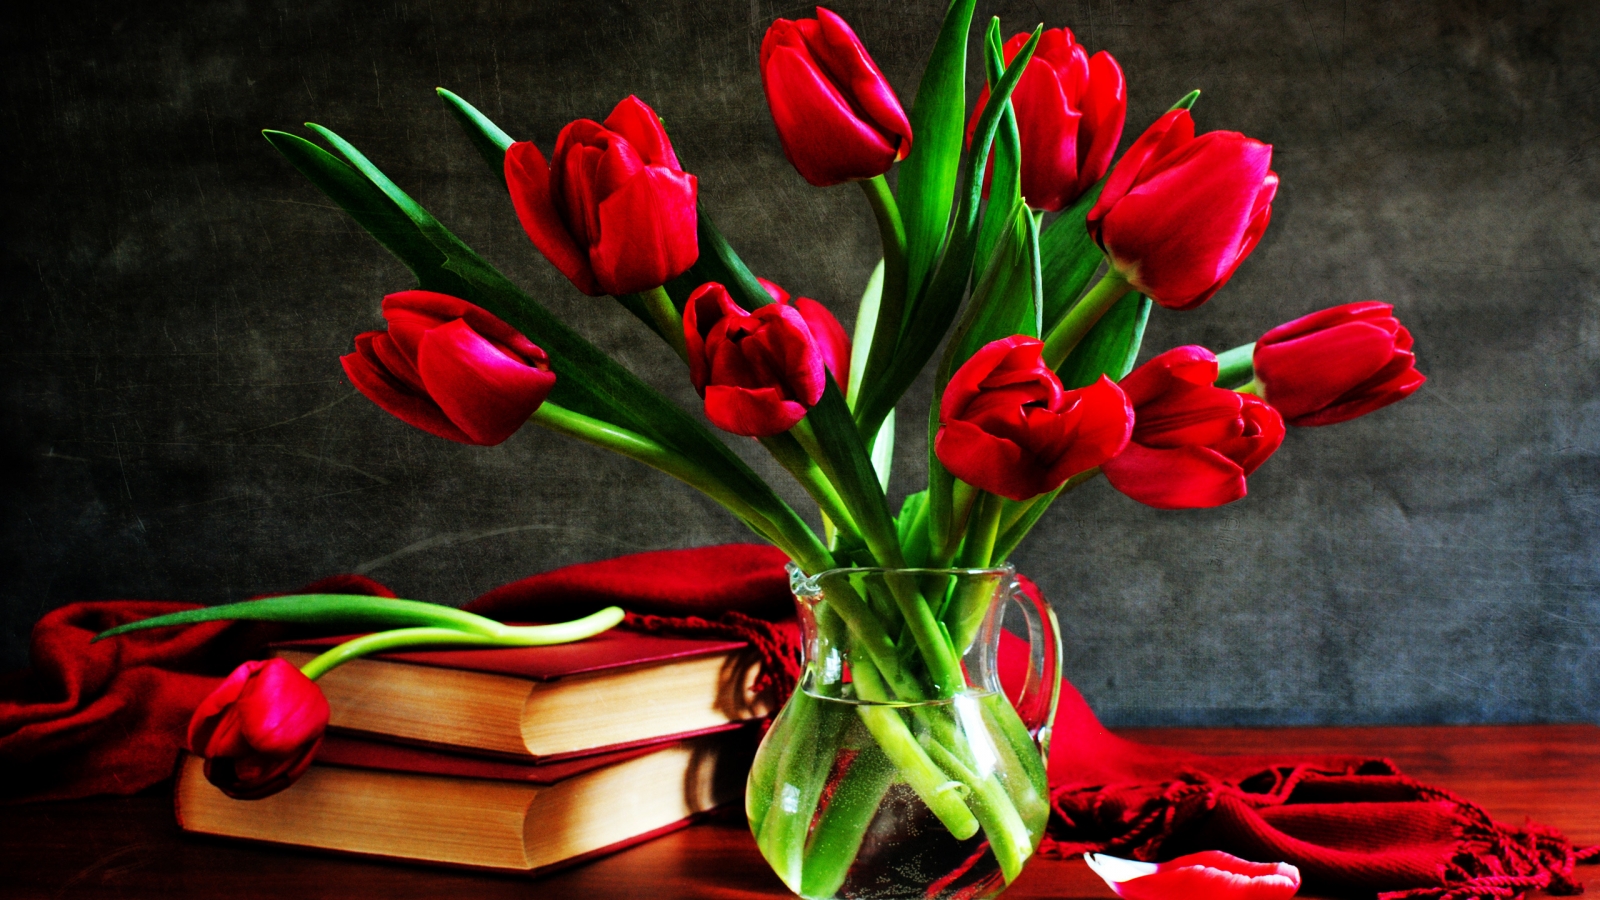 Tulips Vase for 1600 x 900 HDTV resolution